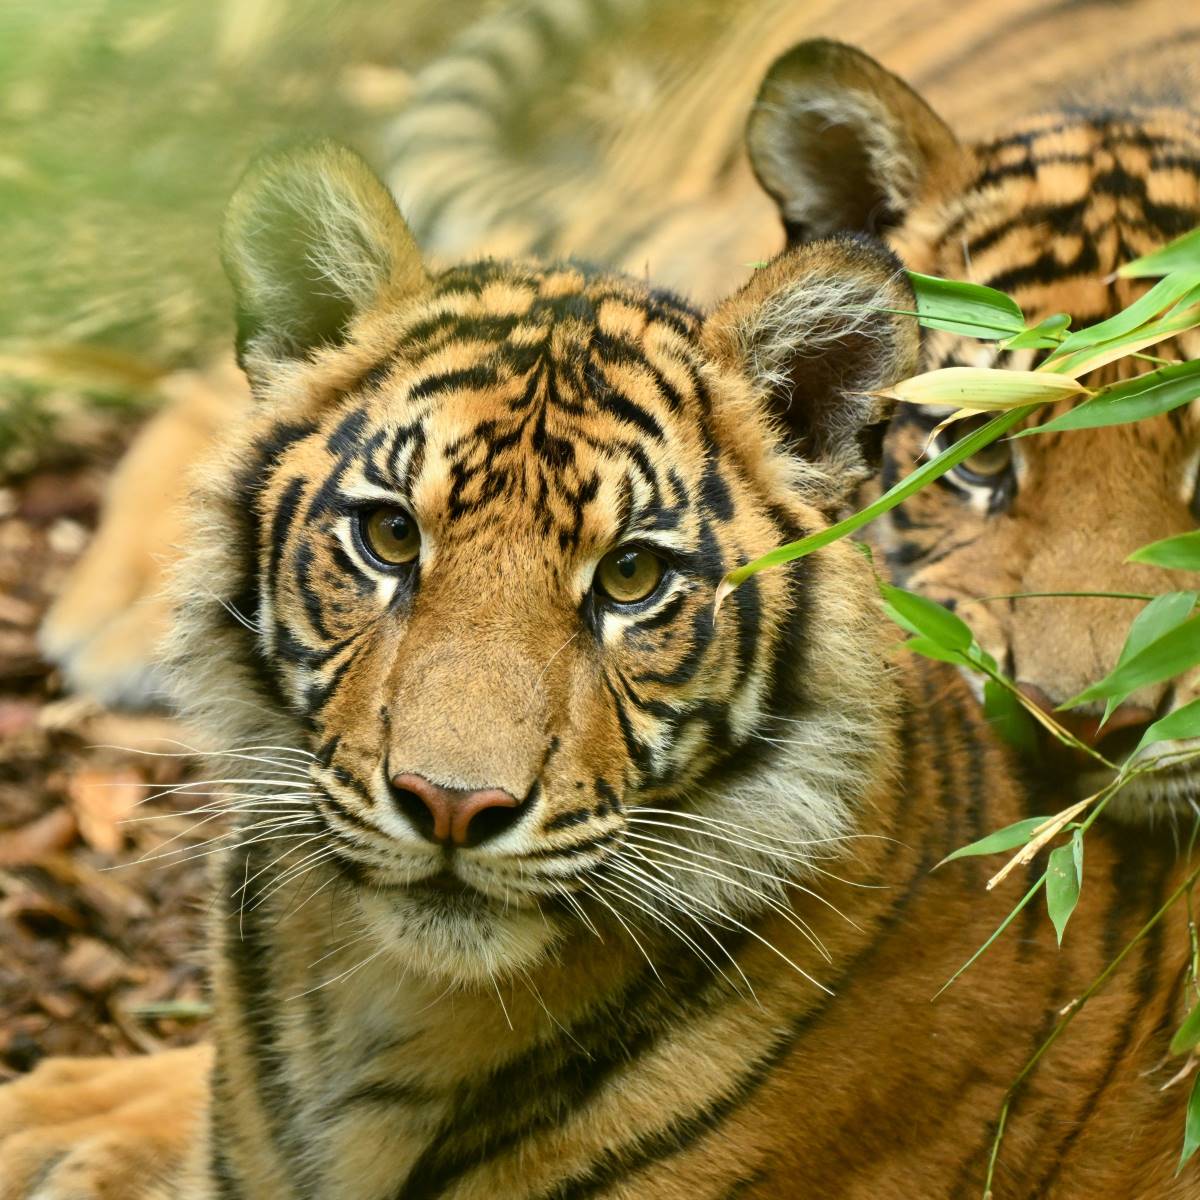 Sumatran Tiger at the Adelaide Zoo